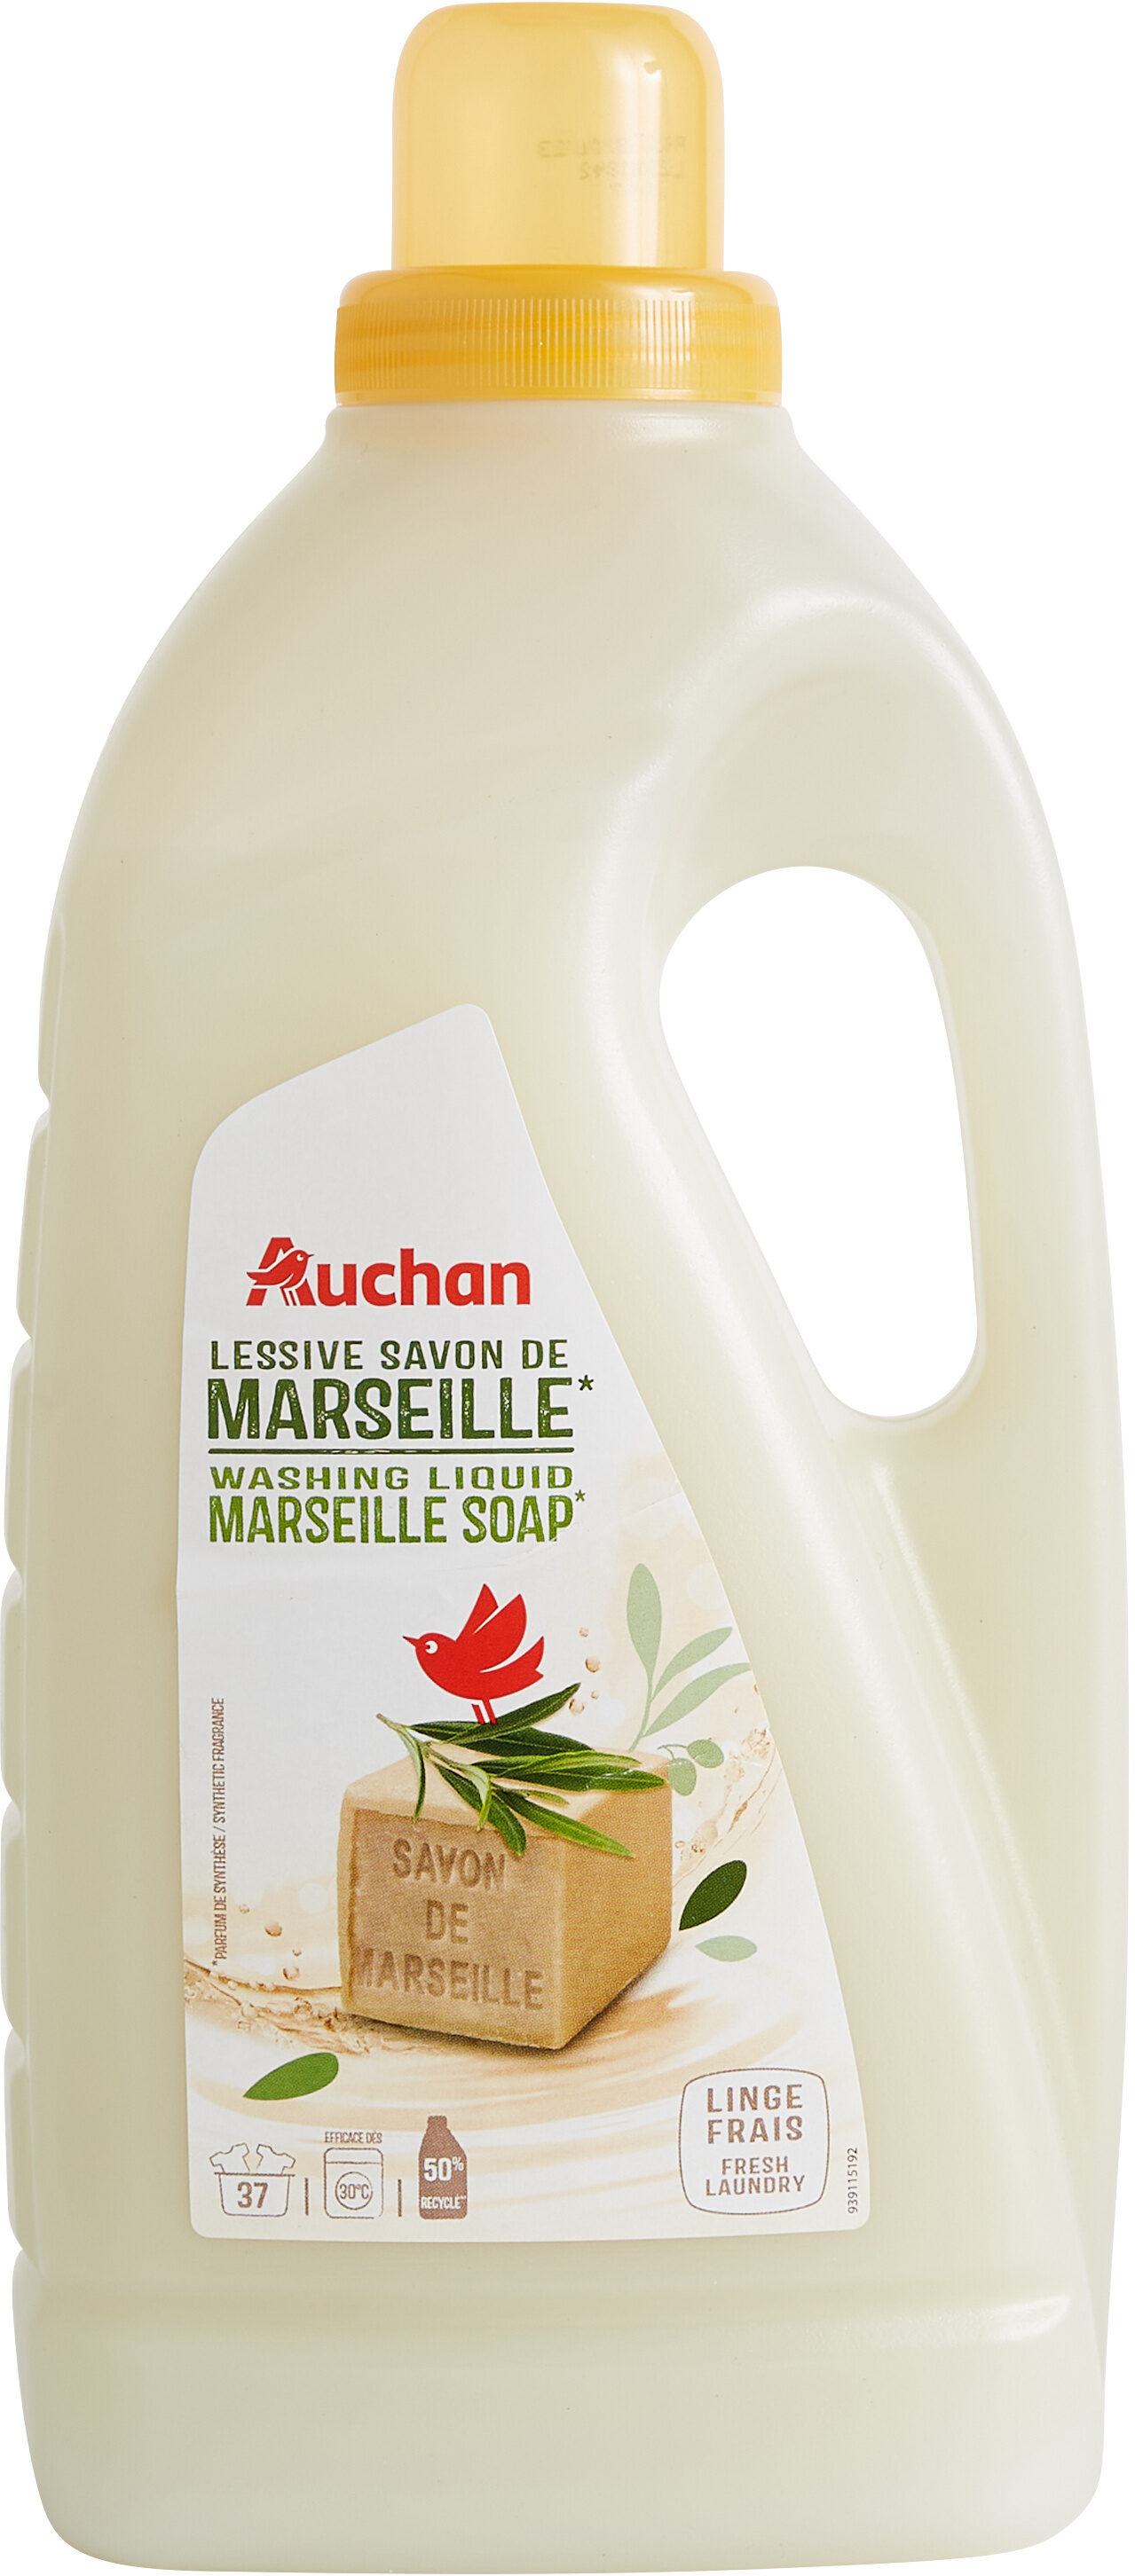 Auchan lessive liquide savon de marseille 37 doses 2l - Product - en